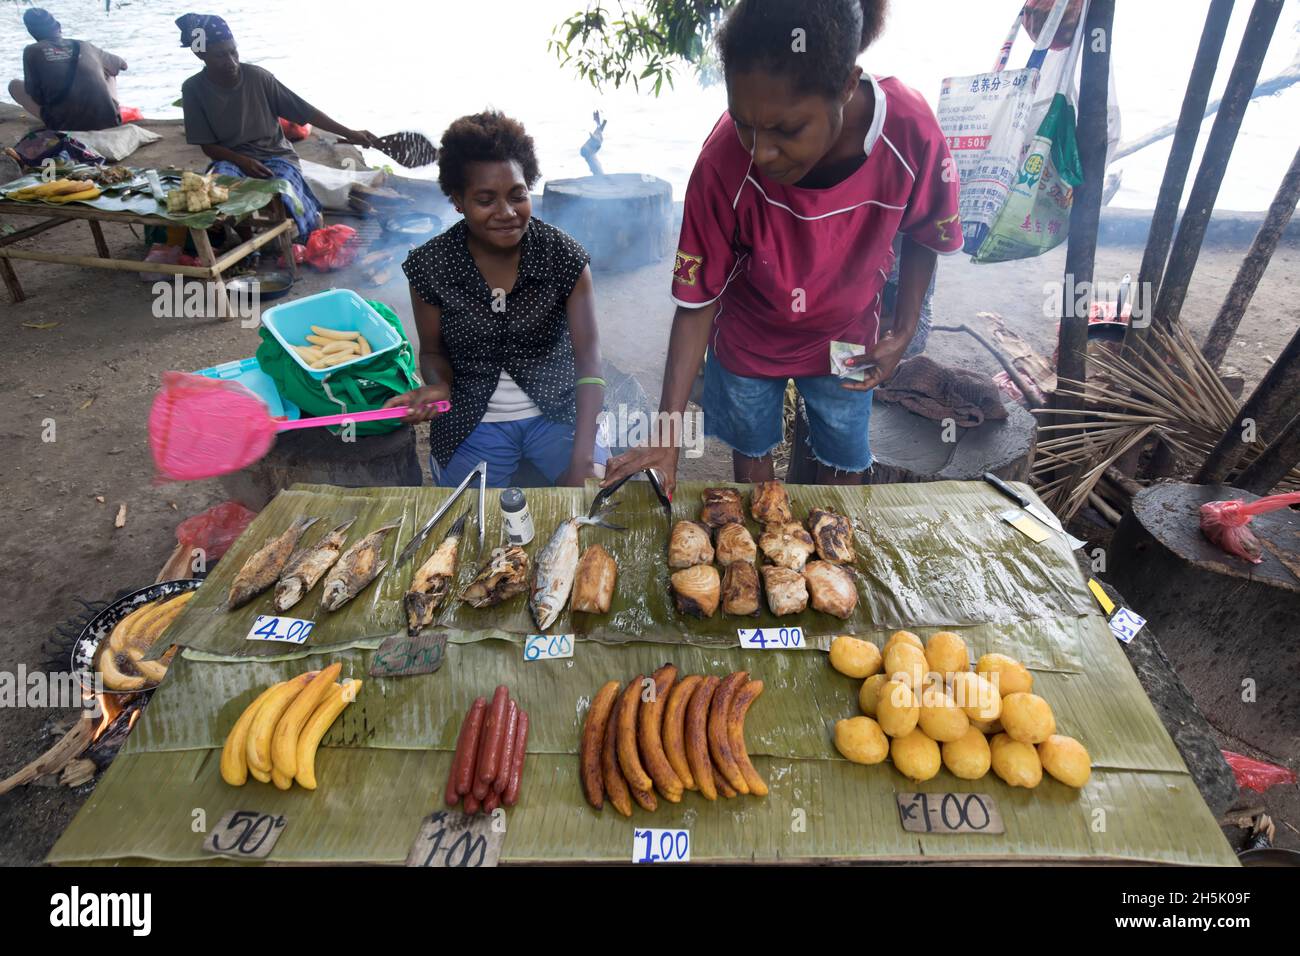 Frauen, die traditionelle Lebensmittel an einem Verkaufsstand auf einem offenen Markt in Madang, Papua-Neuguinea, Madang, Provinz Madang, Papua-Neuguinea verkaufen Stockfoto